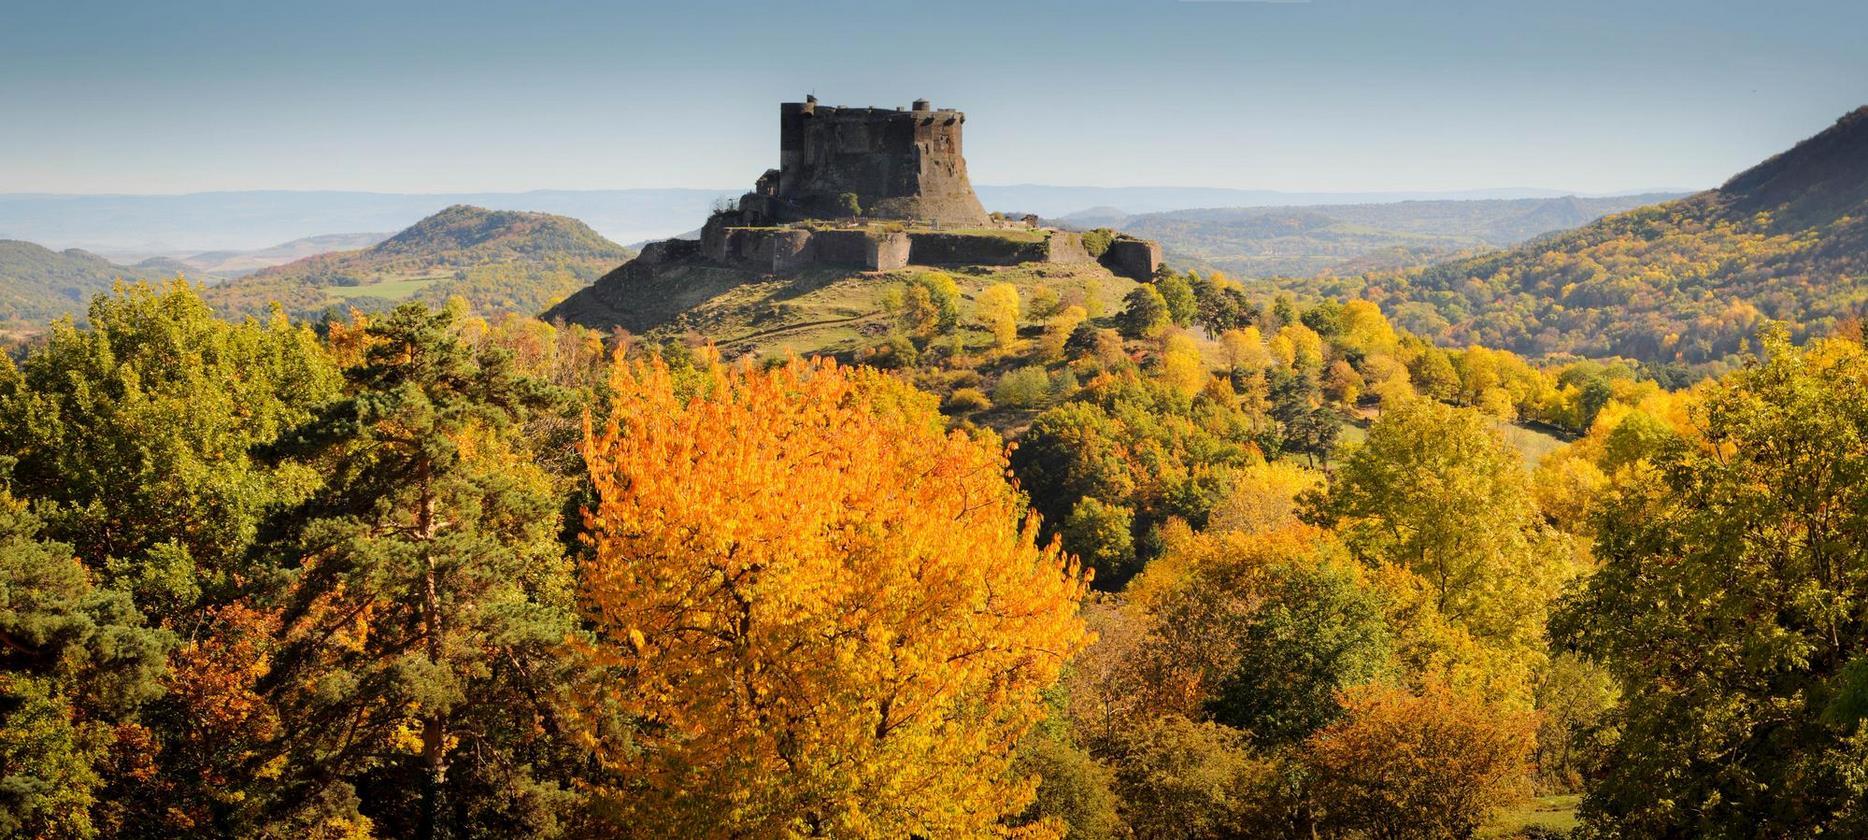 Chateau de Murol en Automne avec vue sur les volcans d'Auvergne